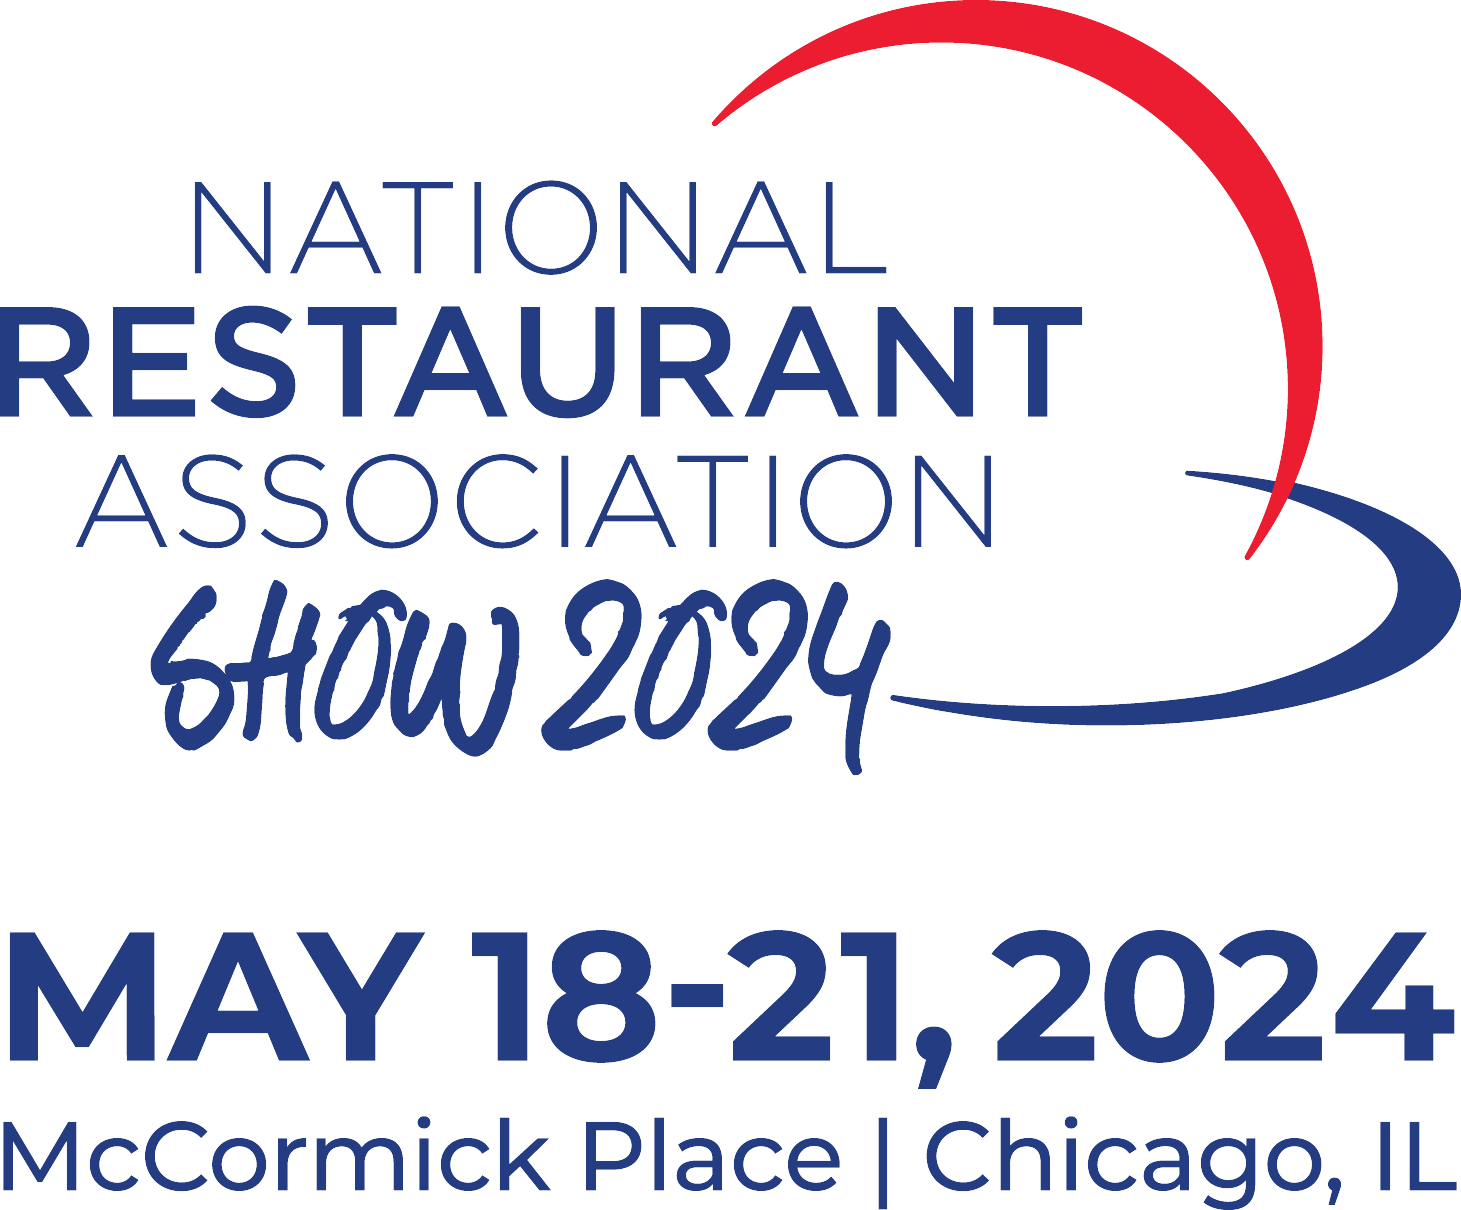 National Restaurant Association Show (NRA)